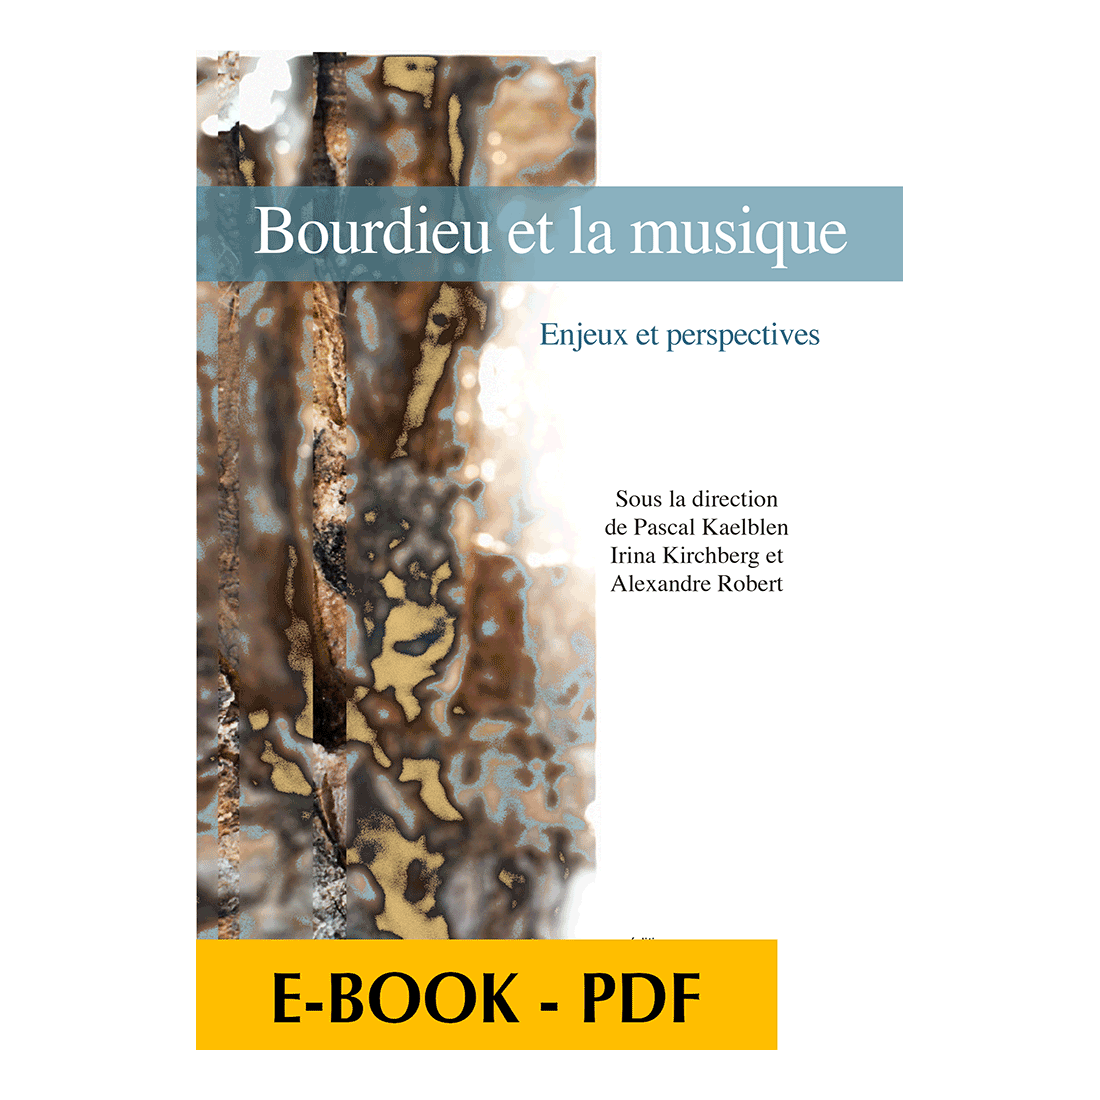 Bourdieu et la musique - Enjeux et perspectives - E-book PDF